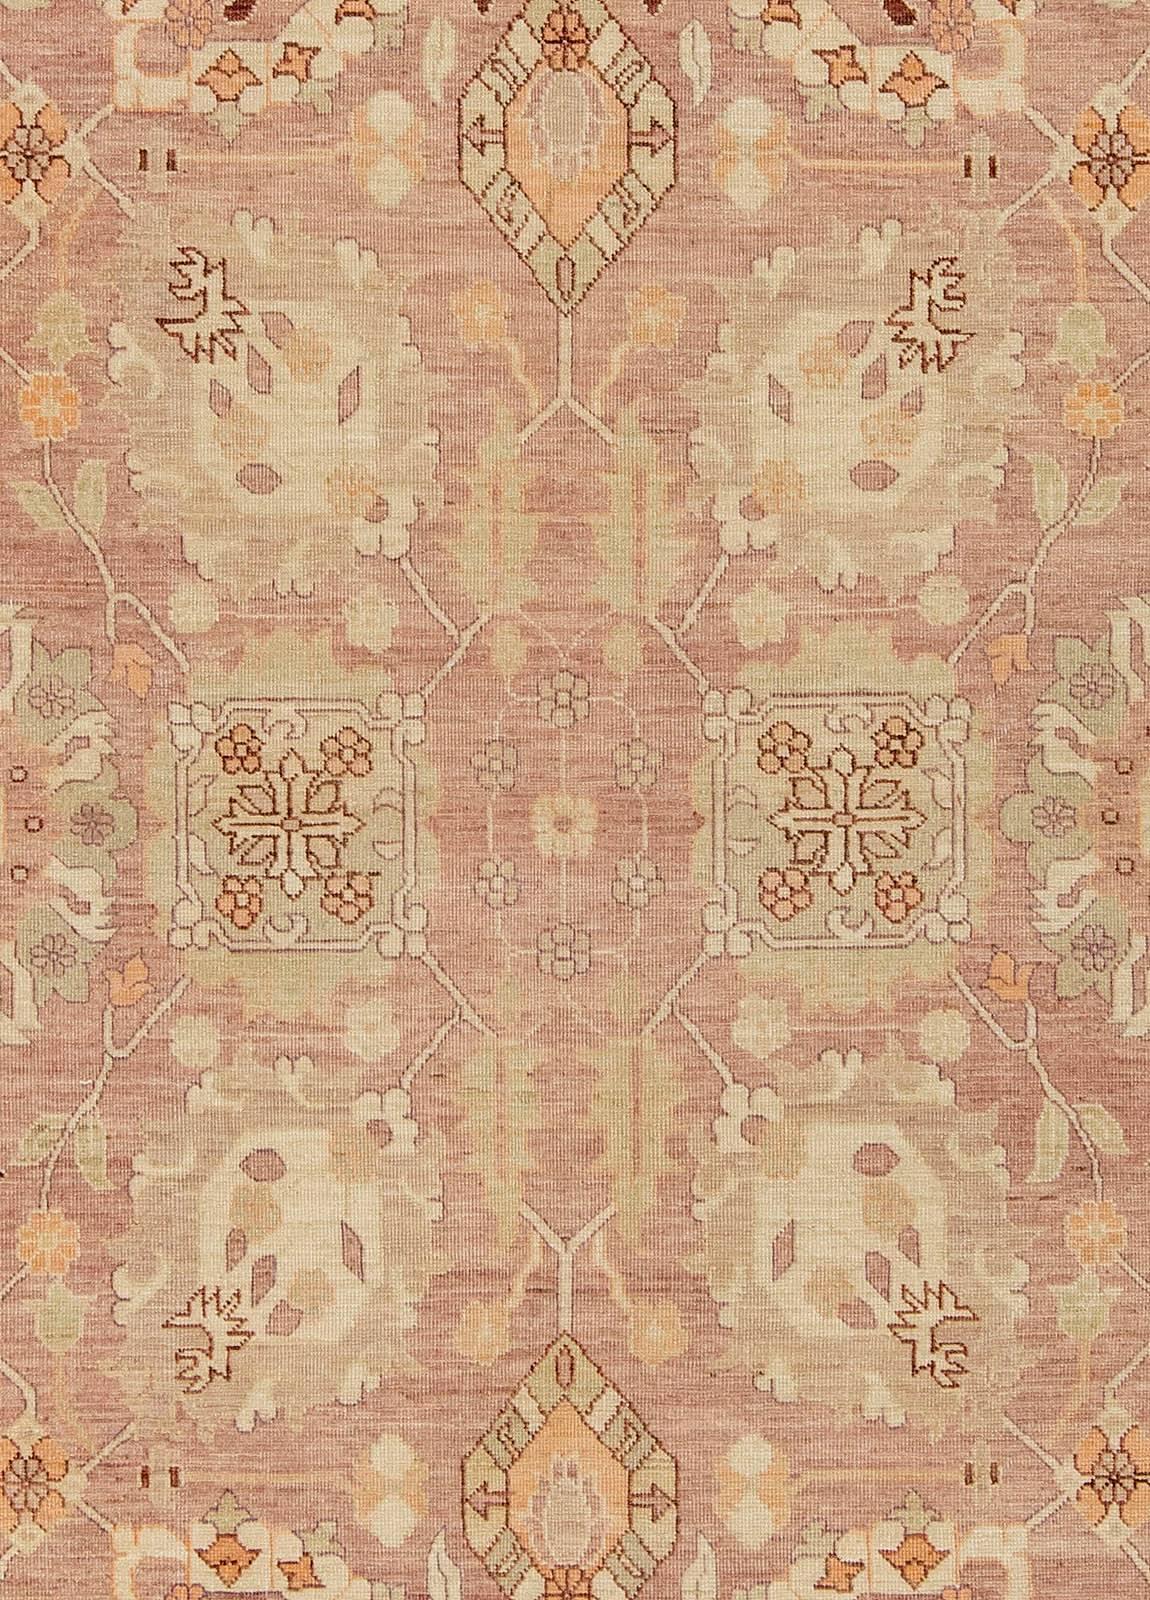 Traditional oriental inspired Tabriz beige wool rug by Doris Leslie Blau.
Size: 11'0